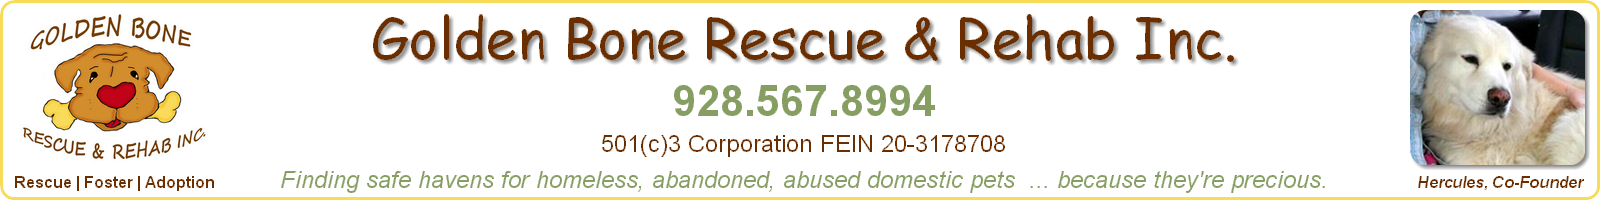 Upcoming Dog Adoption Rescue Events - Golden Bone Rescue & Rehab, Inc., Sedona, Arizona